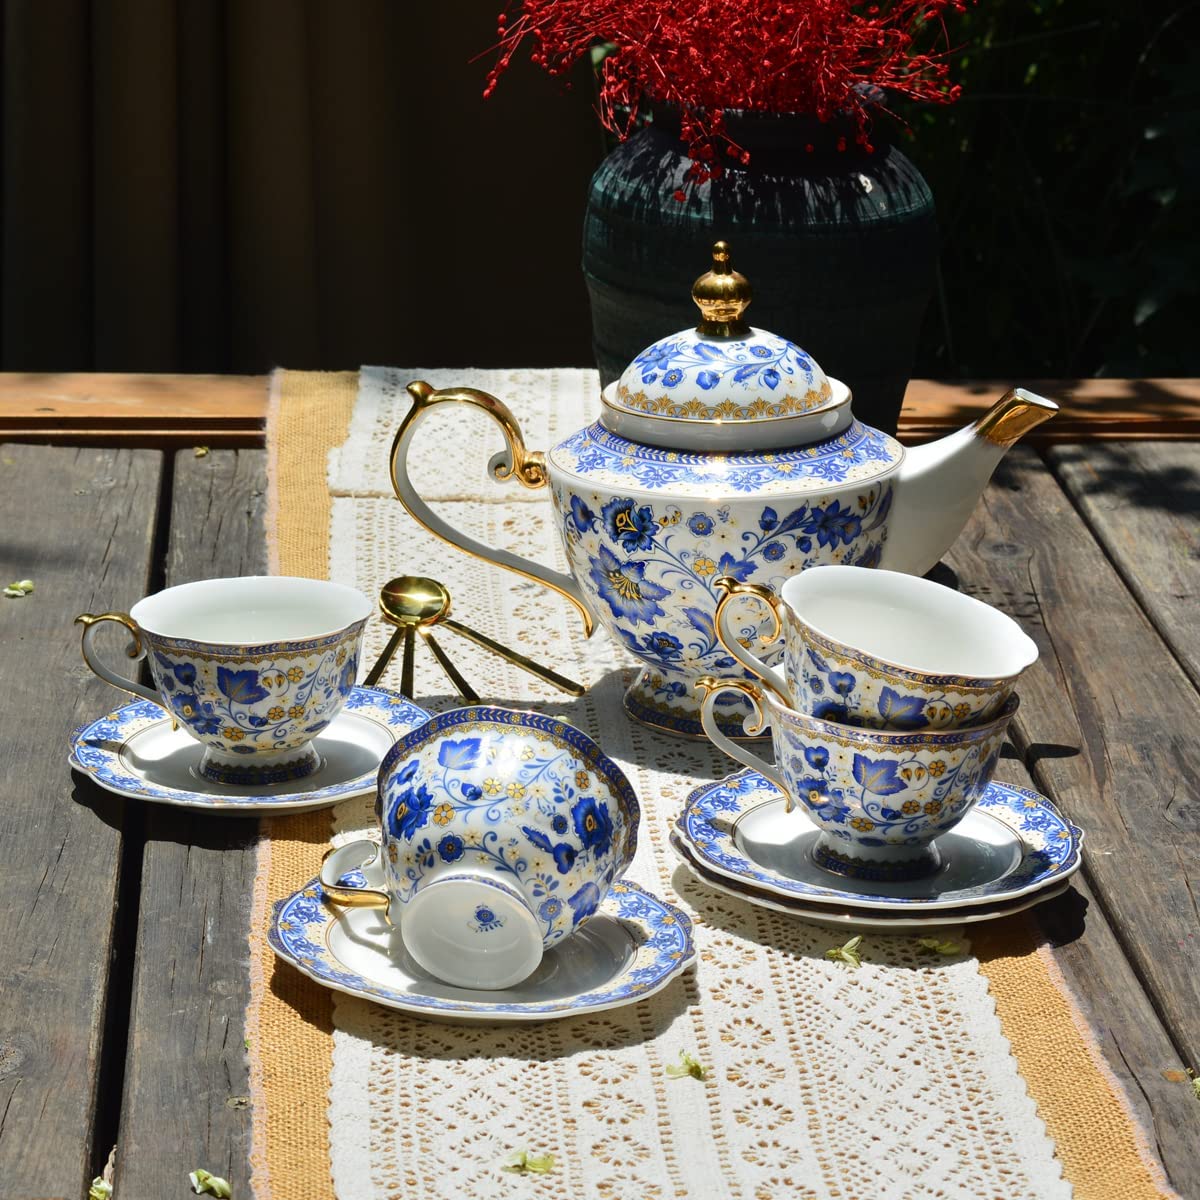 ACMLIFE Tea Cup and Saucer Set, Bone China Tea Cups Set 6.8 oz